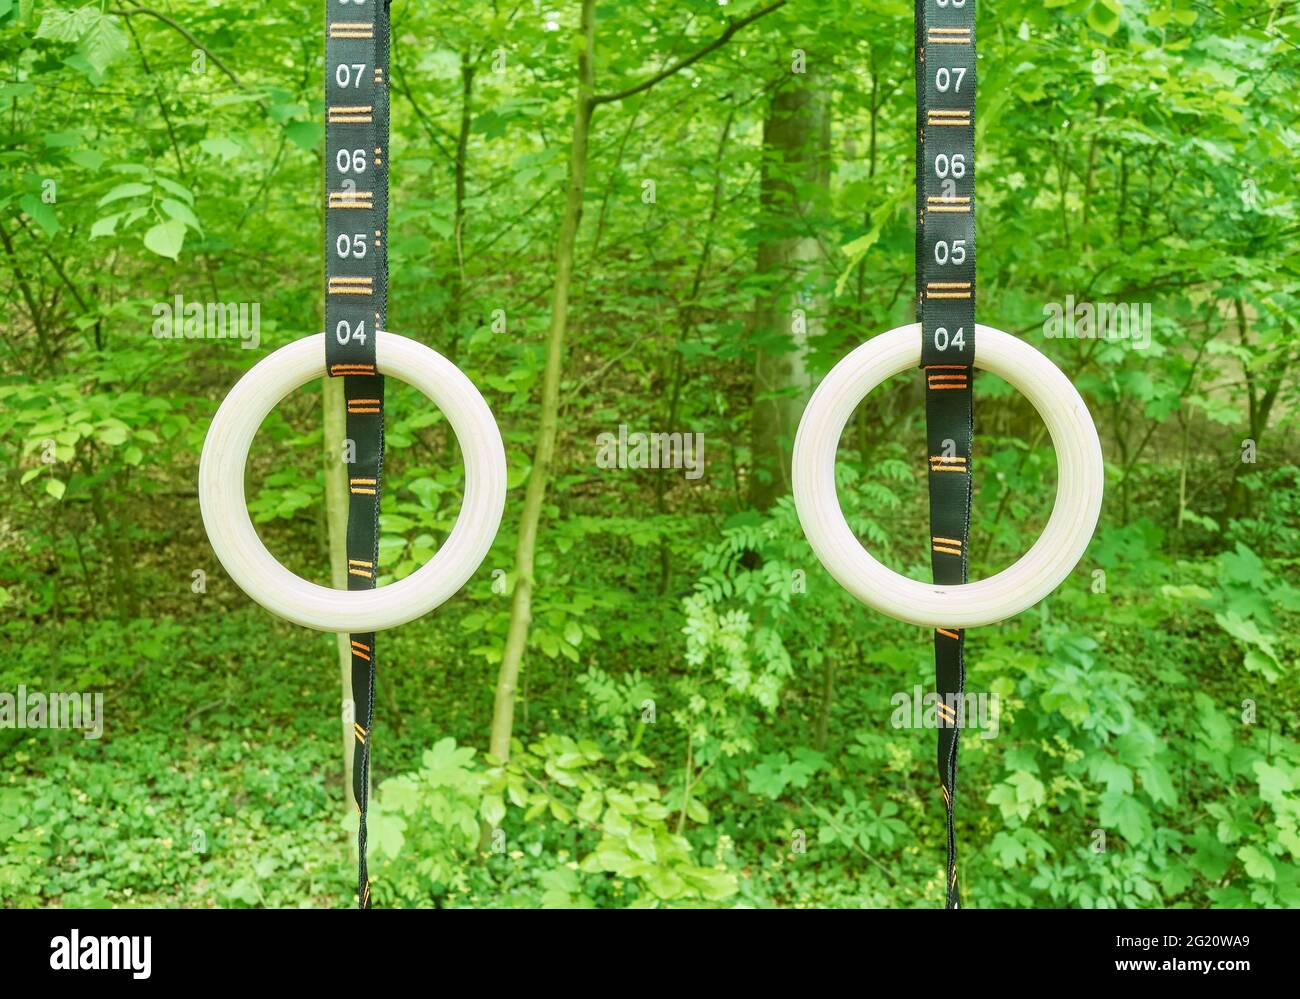 Turnringe mit nummerierten Trägern, die in einem Park hängen, selektiver Fokus. Stockfoto